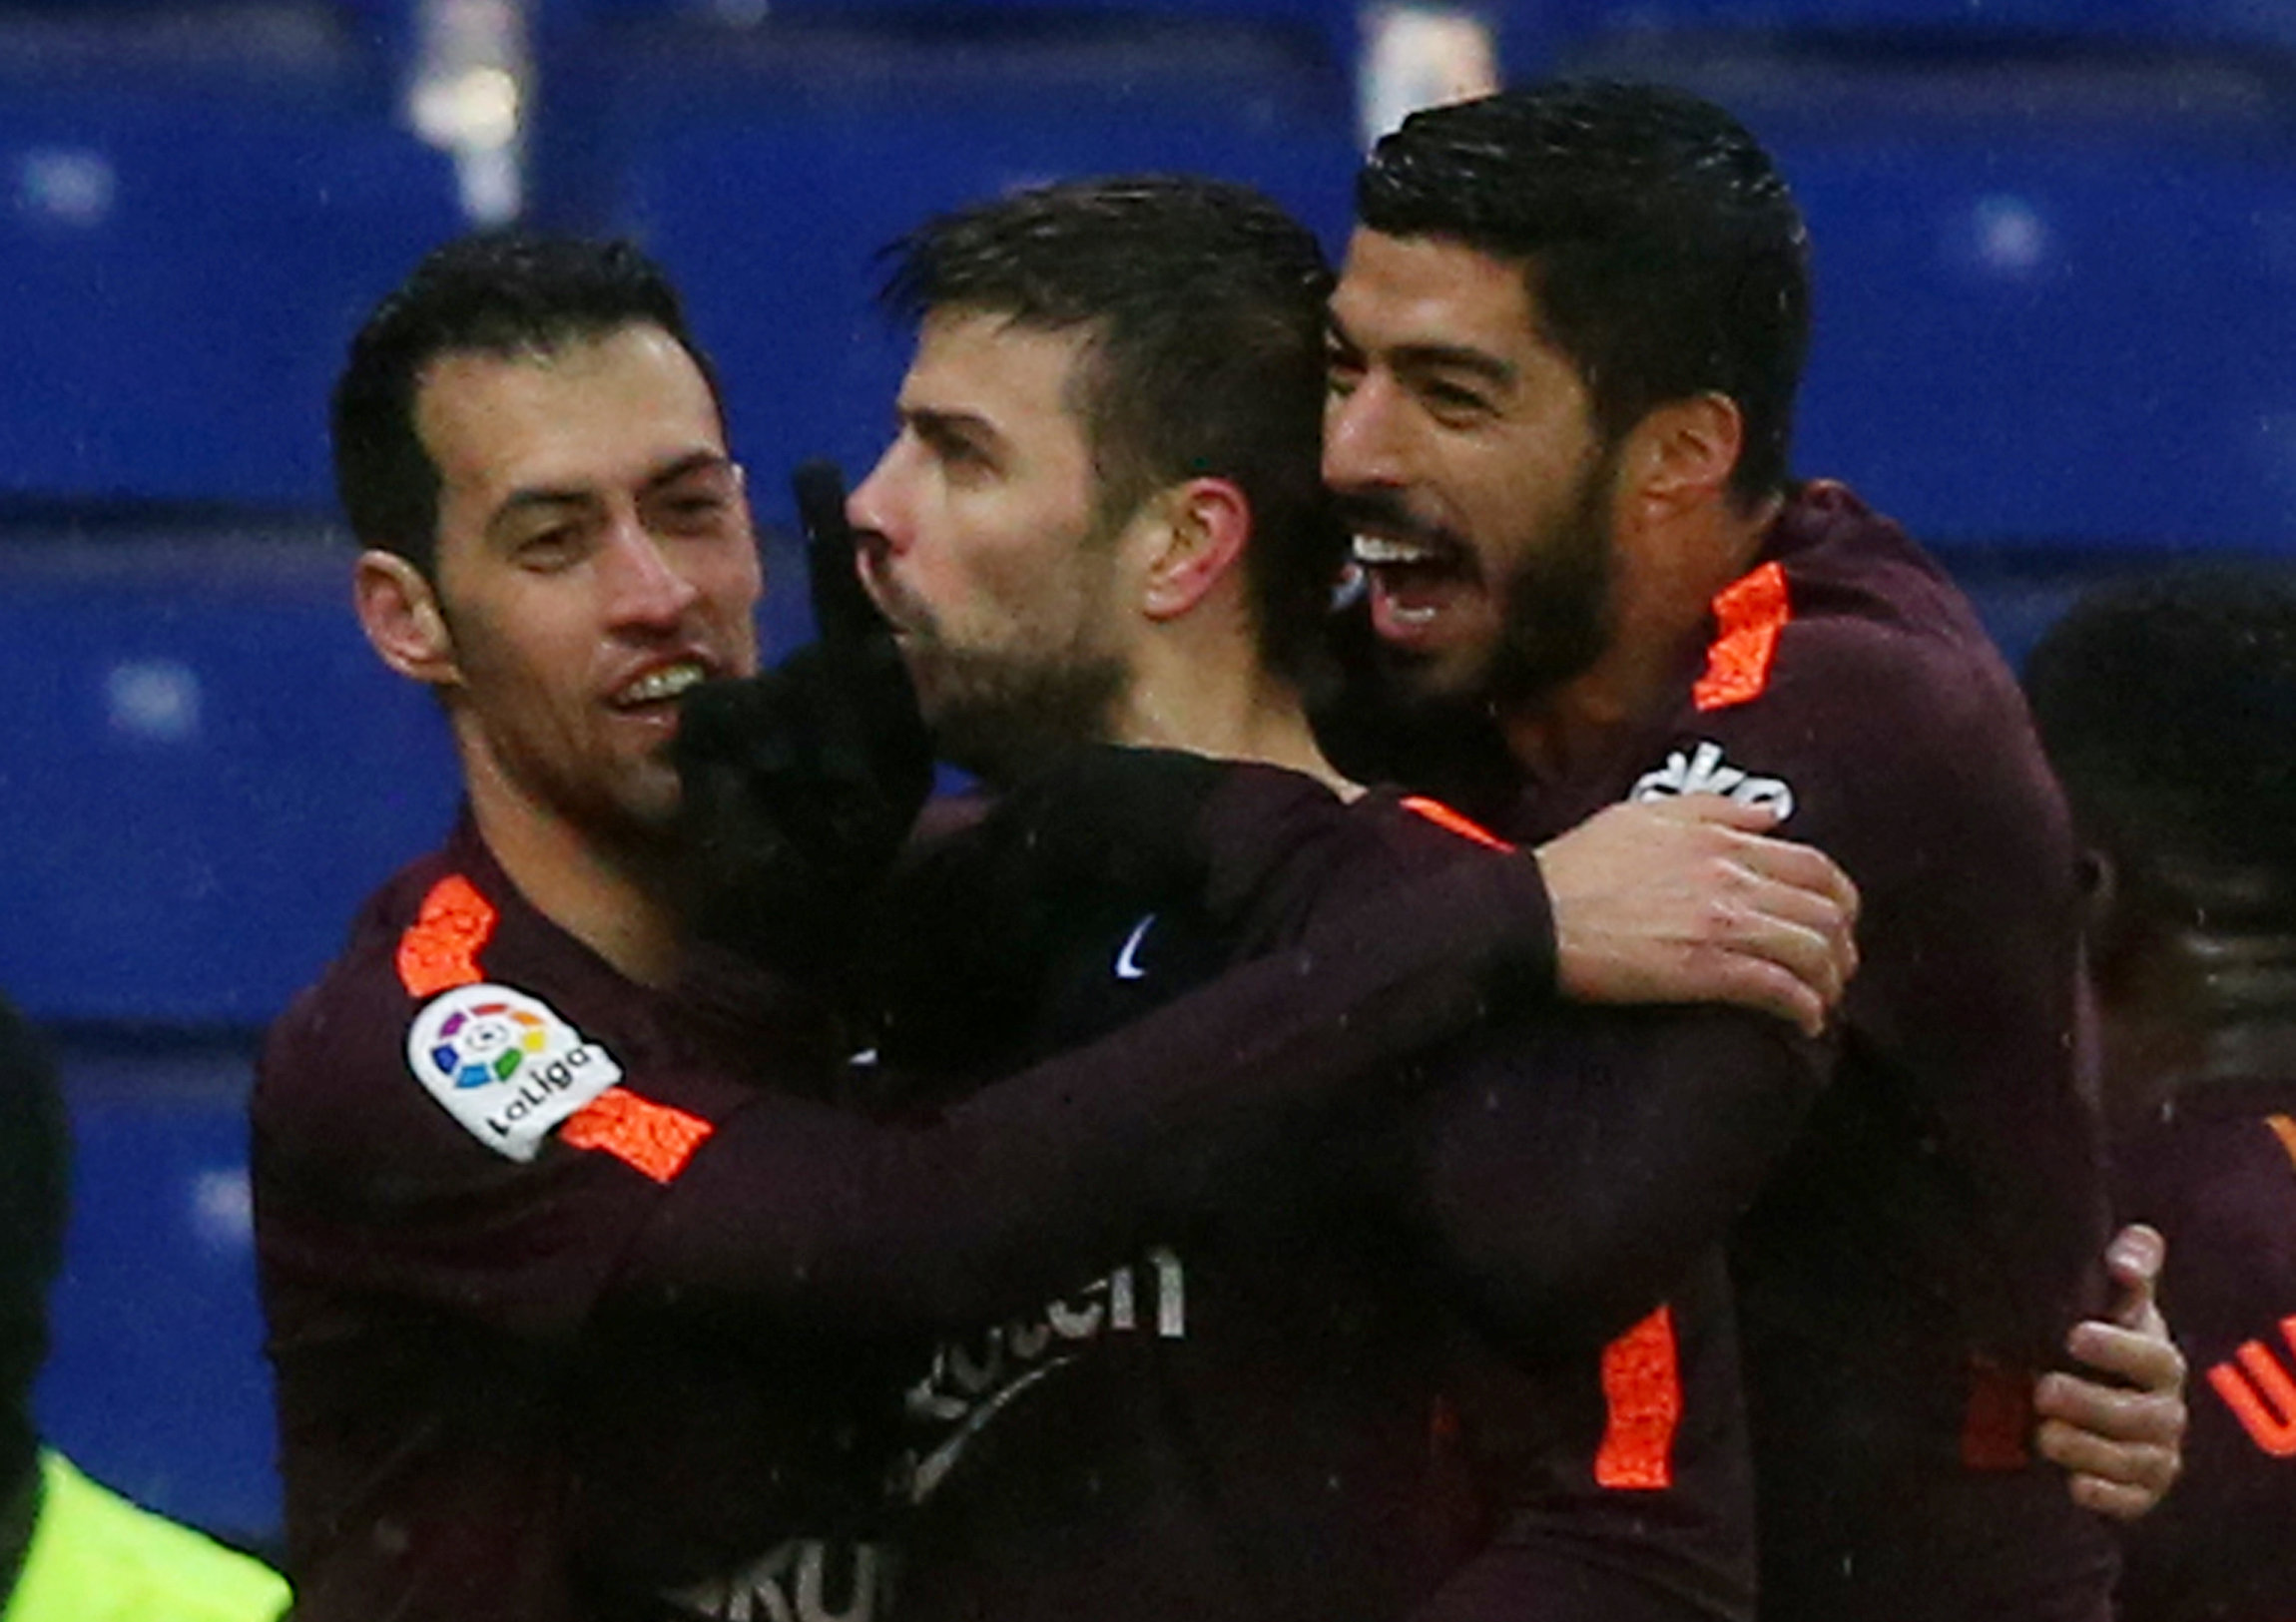 Football: Pique scores as Barca hold Espanyol